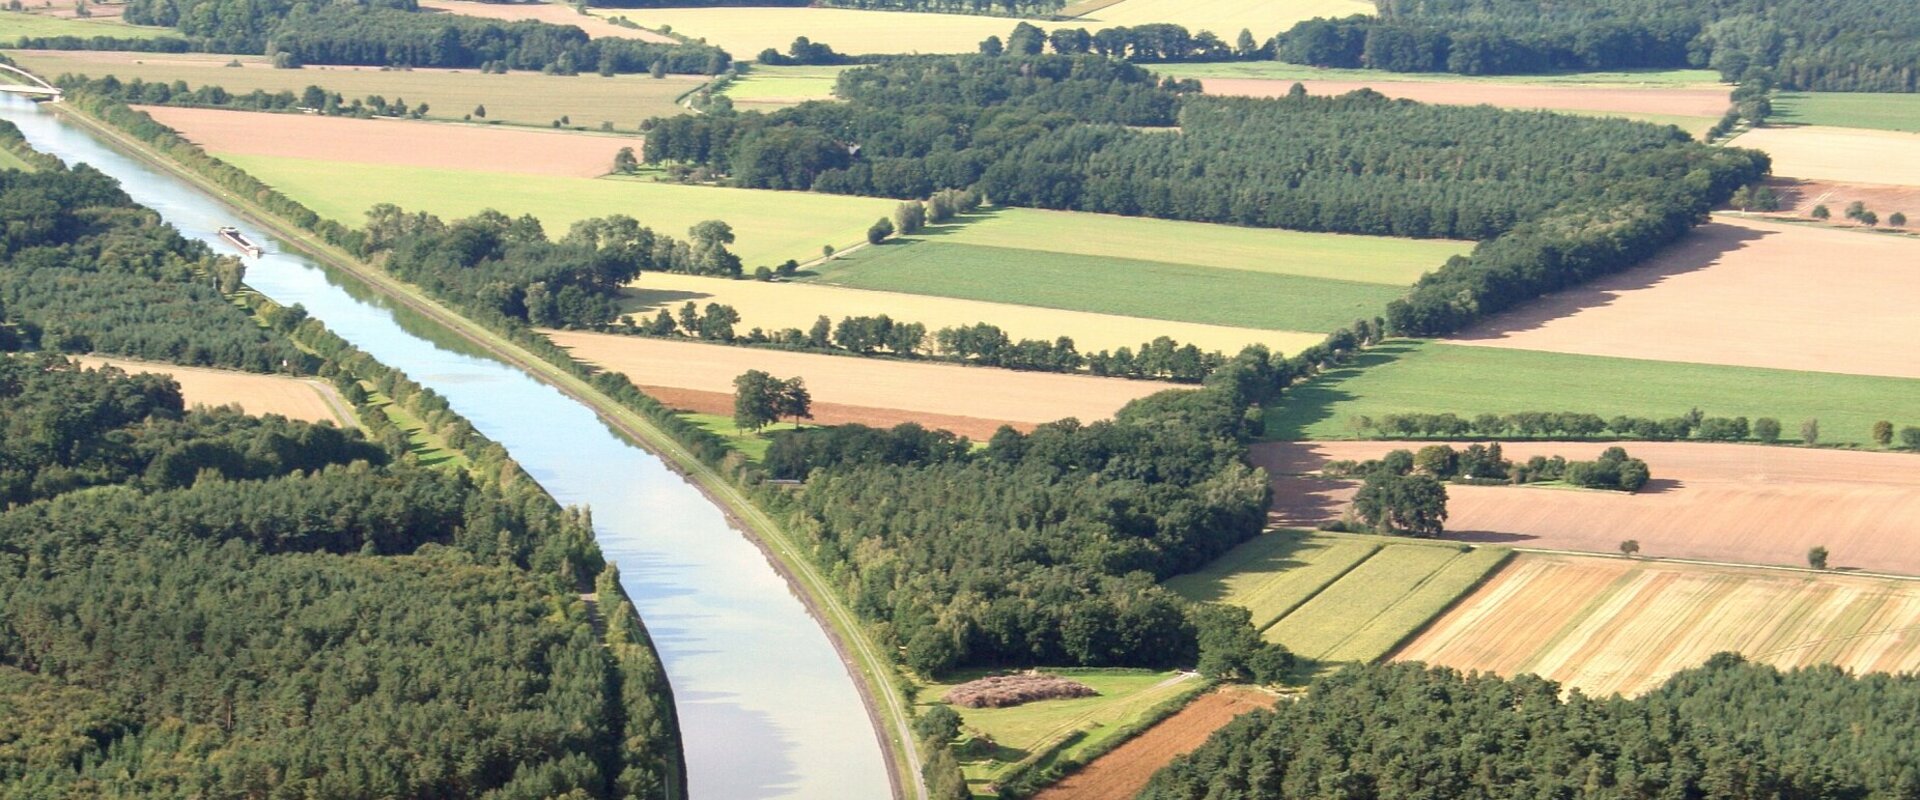 Luftbild von einem Teil des Landkreises Uelzen - Felder, Wiesen, Wälder und im Mittelpunkt der Elbe-Seitenkanal